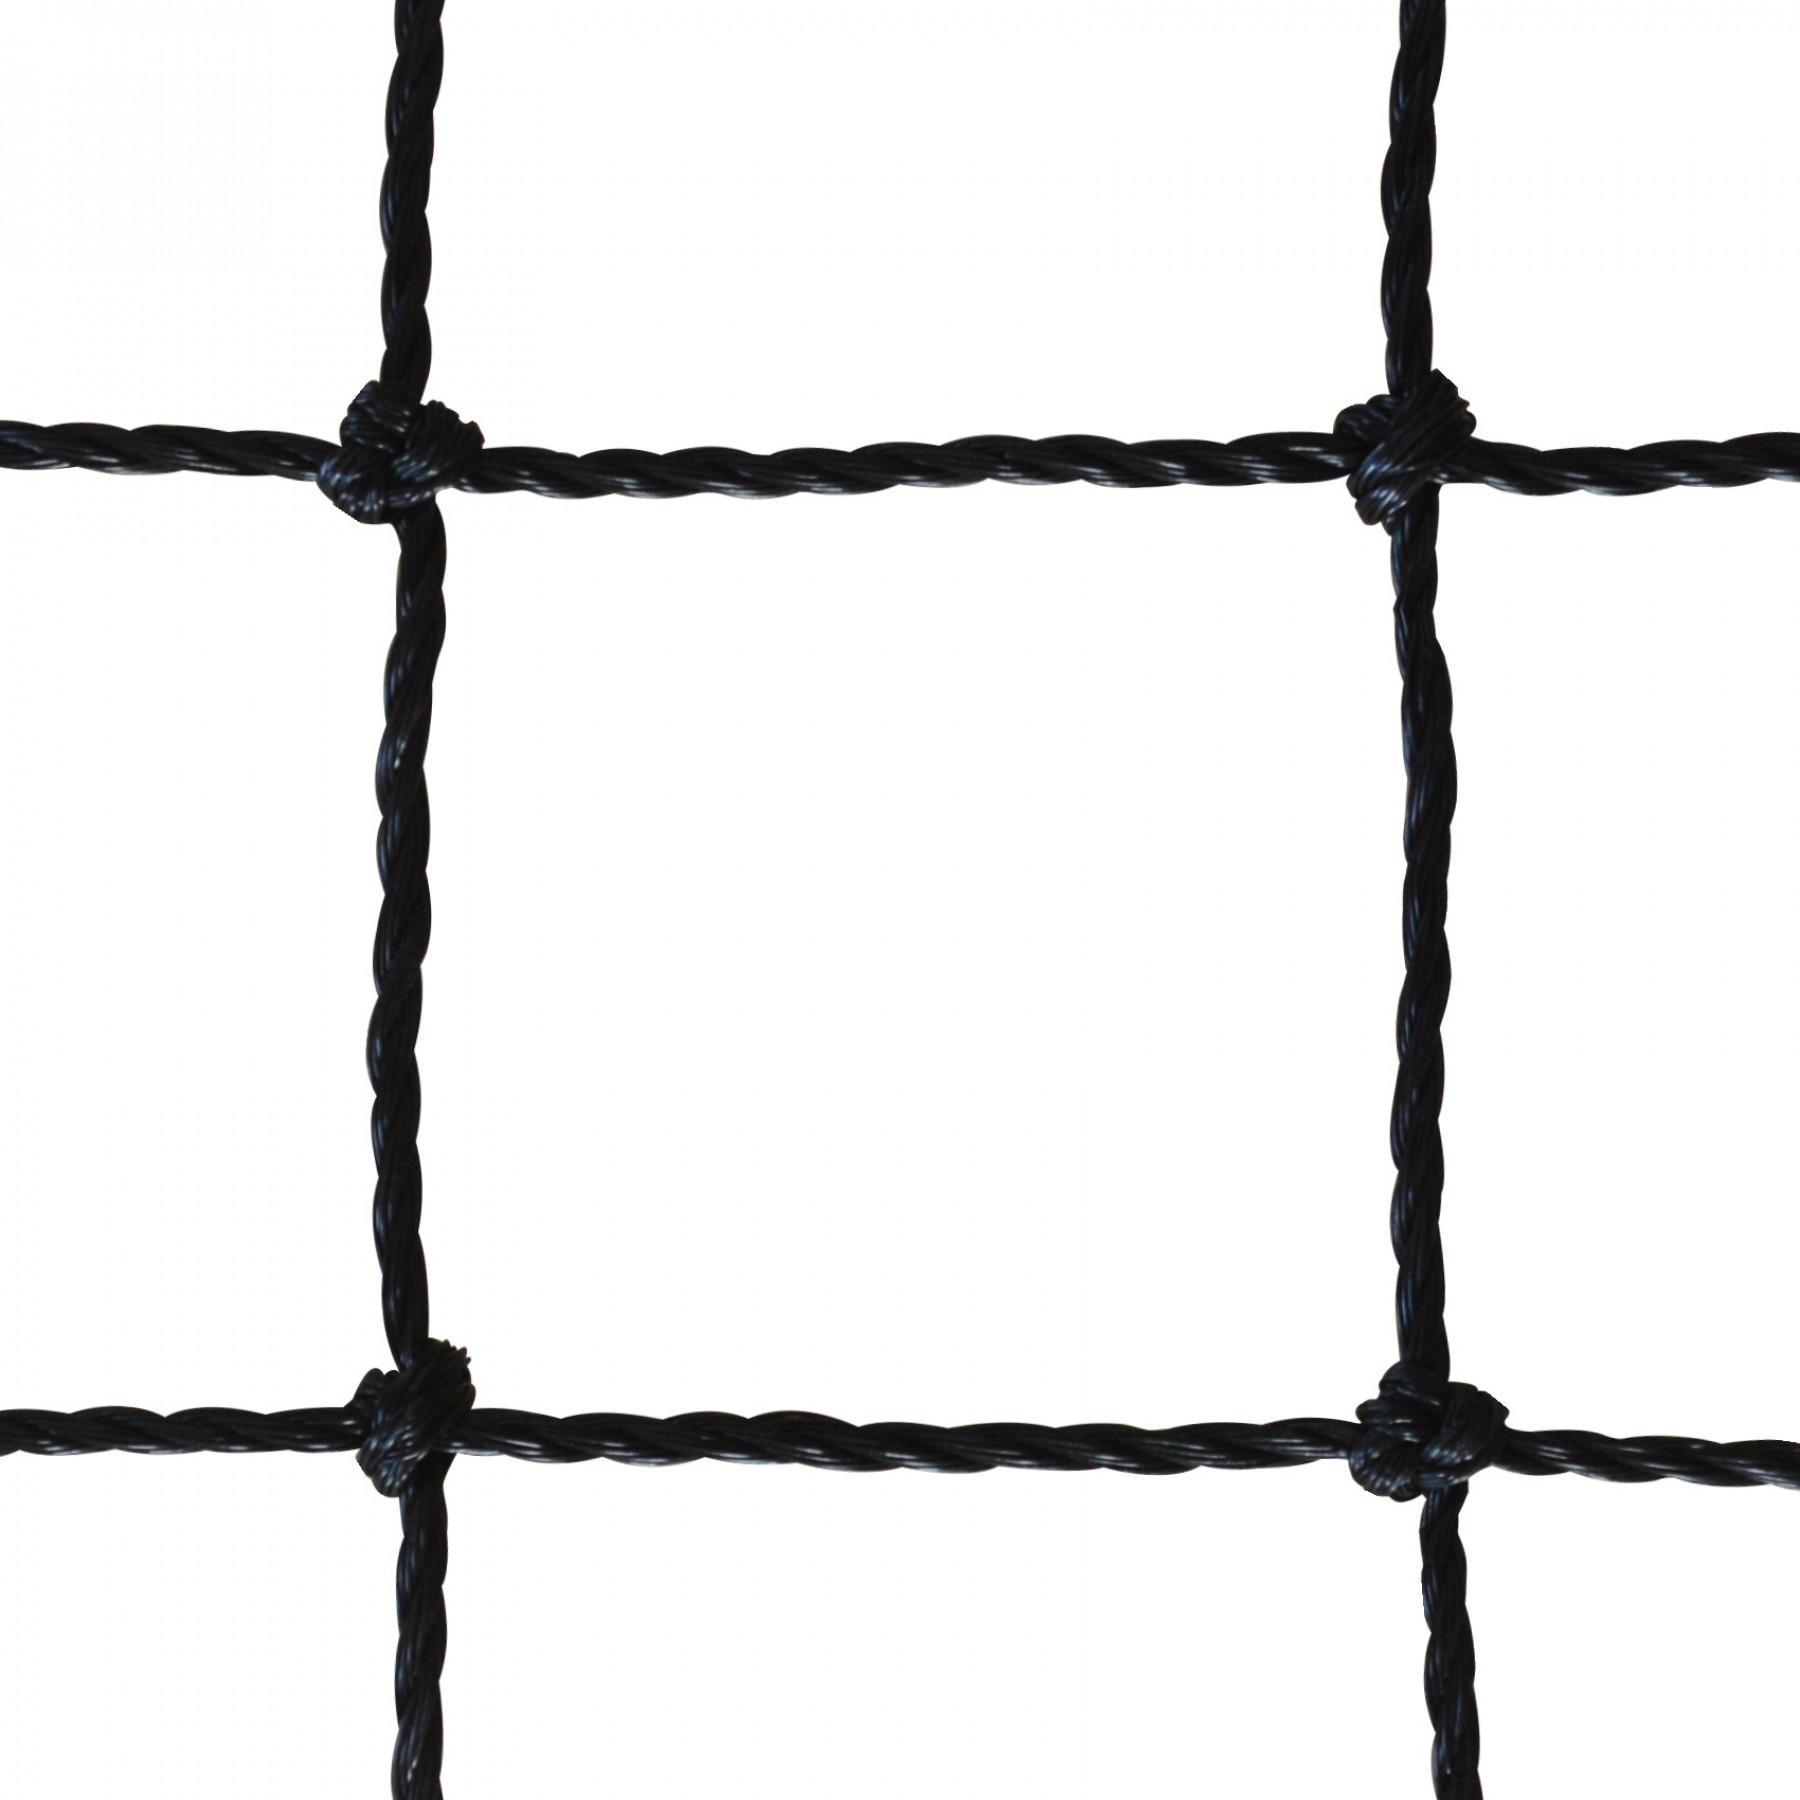 Rete da tennis cablata 2mm mesh 45 raddoppiata su 6 file Sporti France